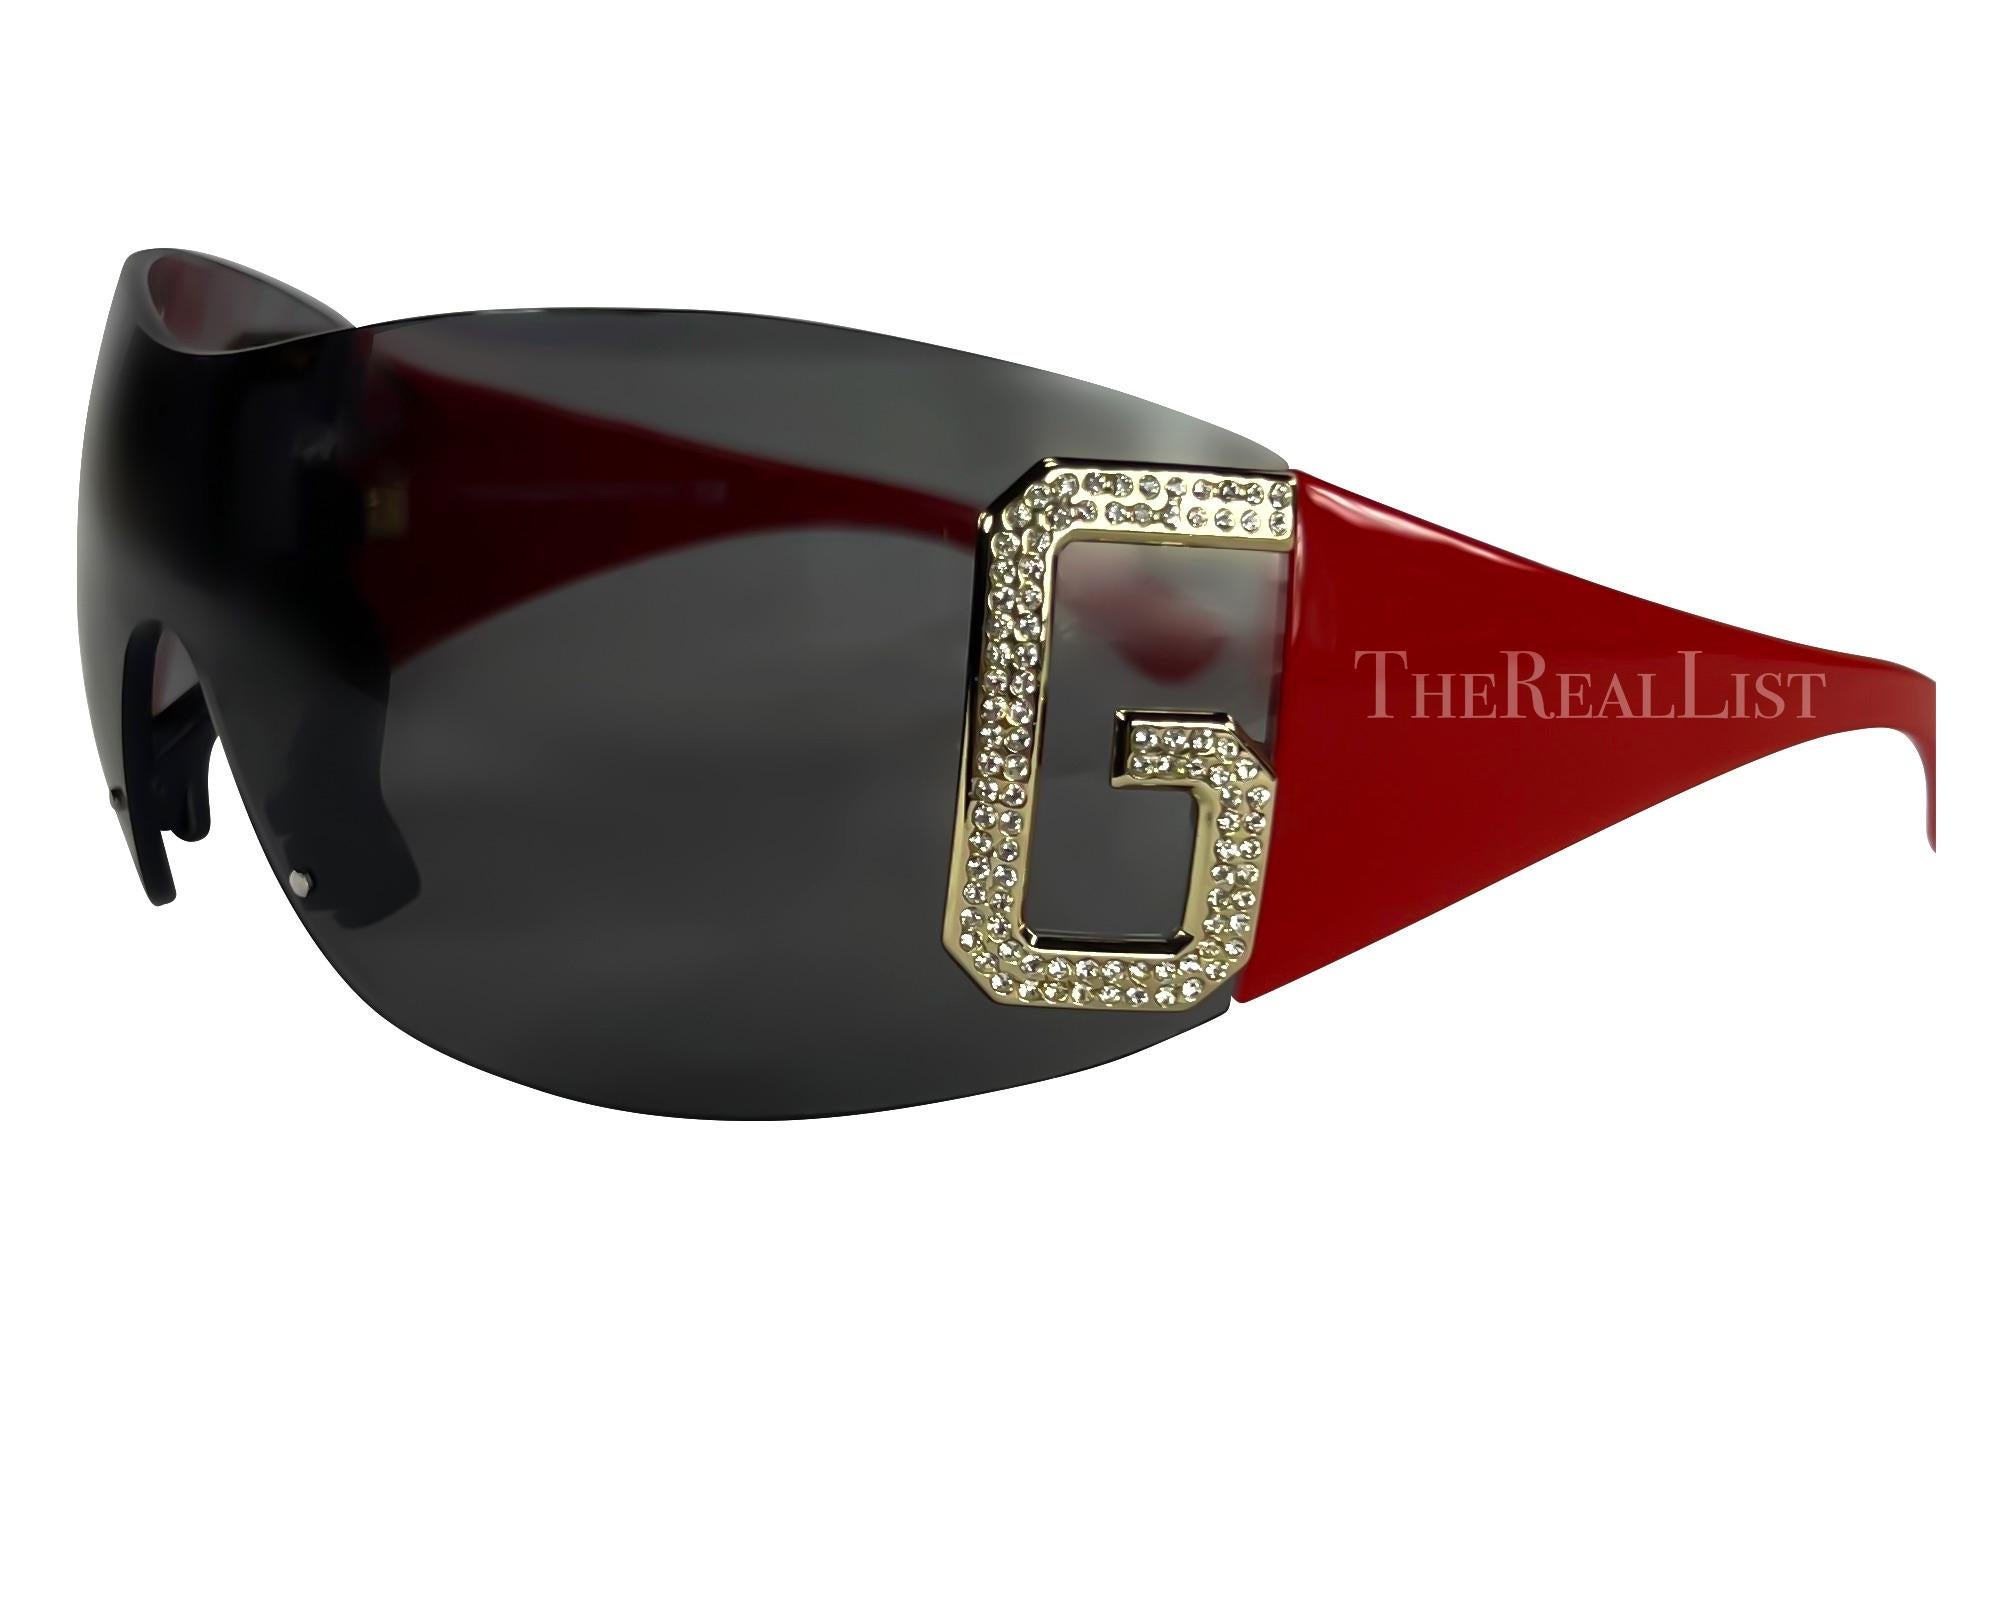 Ich präsentiere eine rote Sonnenbrille von Dolce & Gabbana. Diese übergroße, randlose Sonnenbrille aus den frühen 2000er Jahren strahlt Kühnheit und Selbstbewusstsein aus. Die großen, silberfarbenen, strassbesetzten Logos 